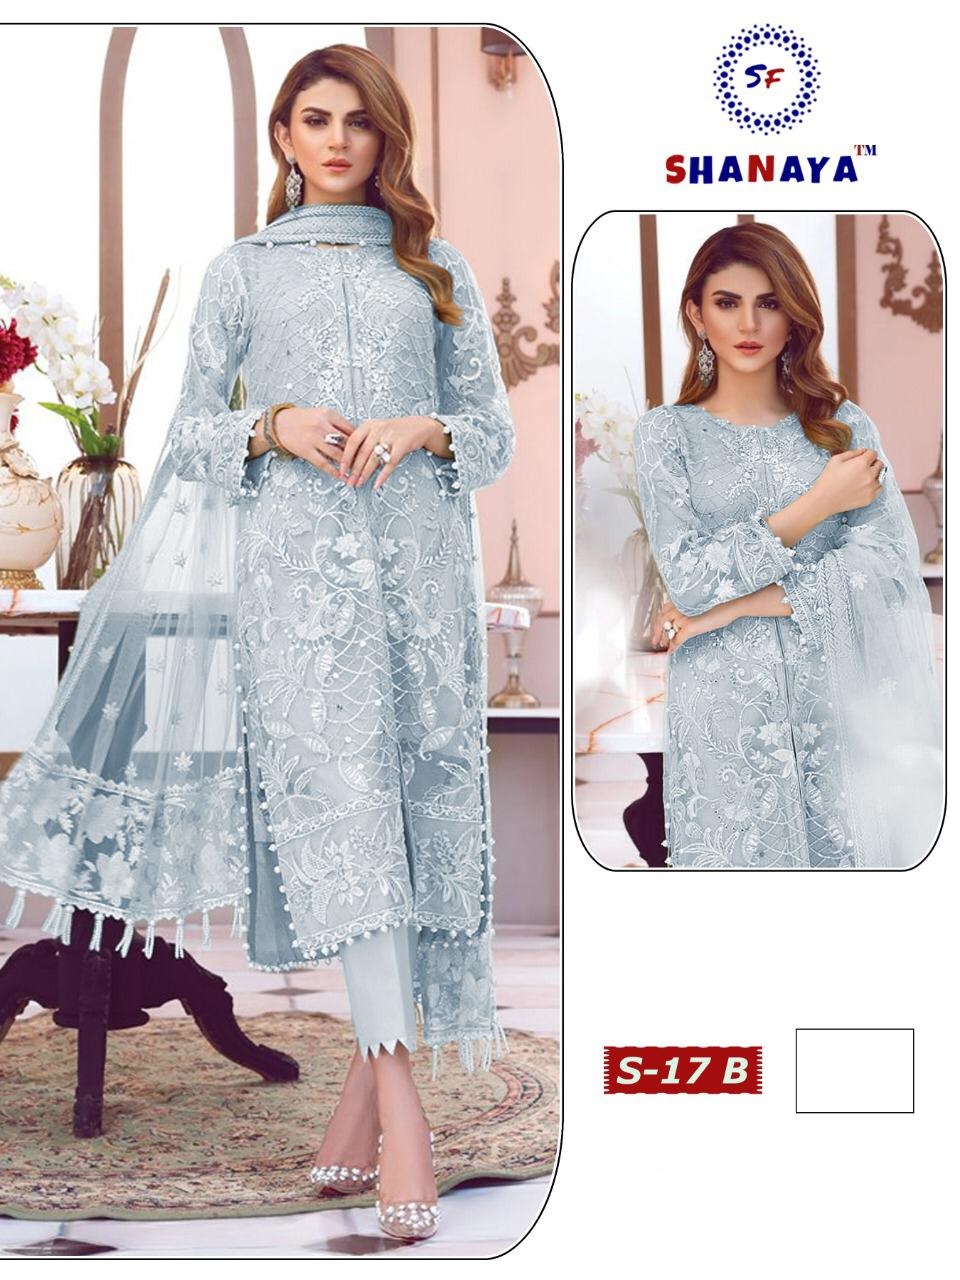 Shanaya Fashion S-17 B